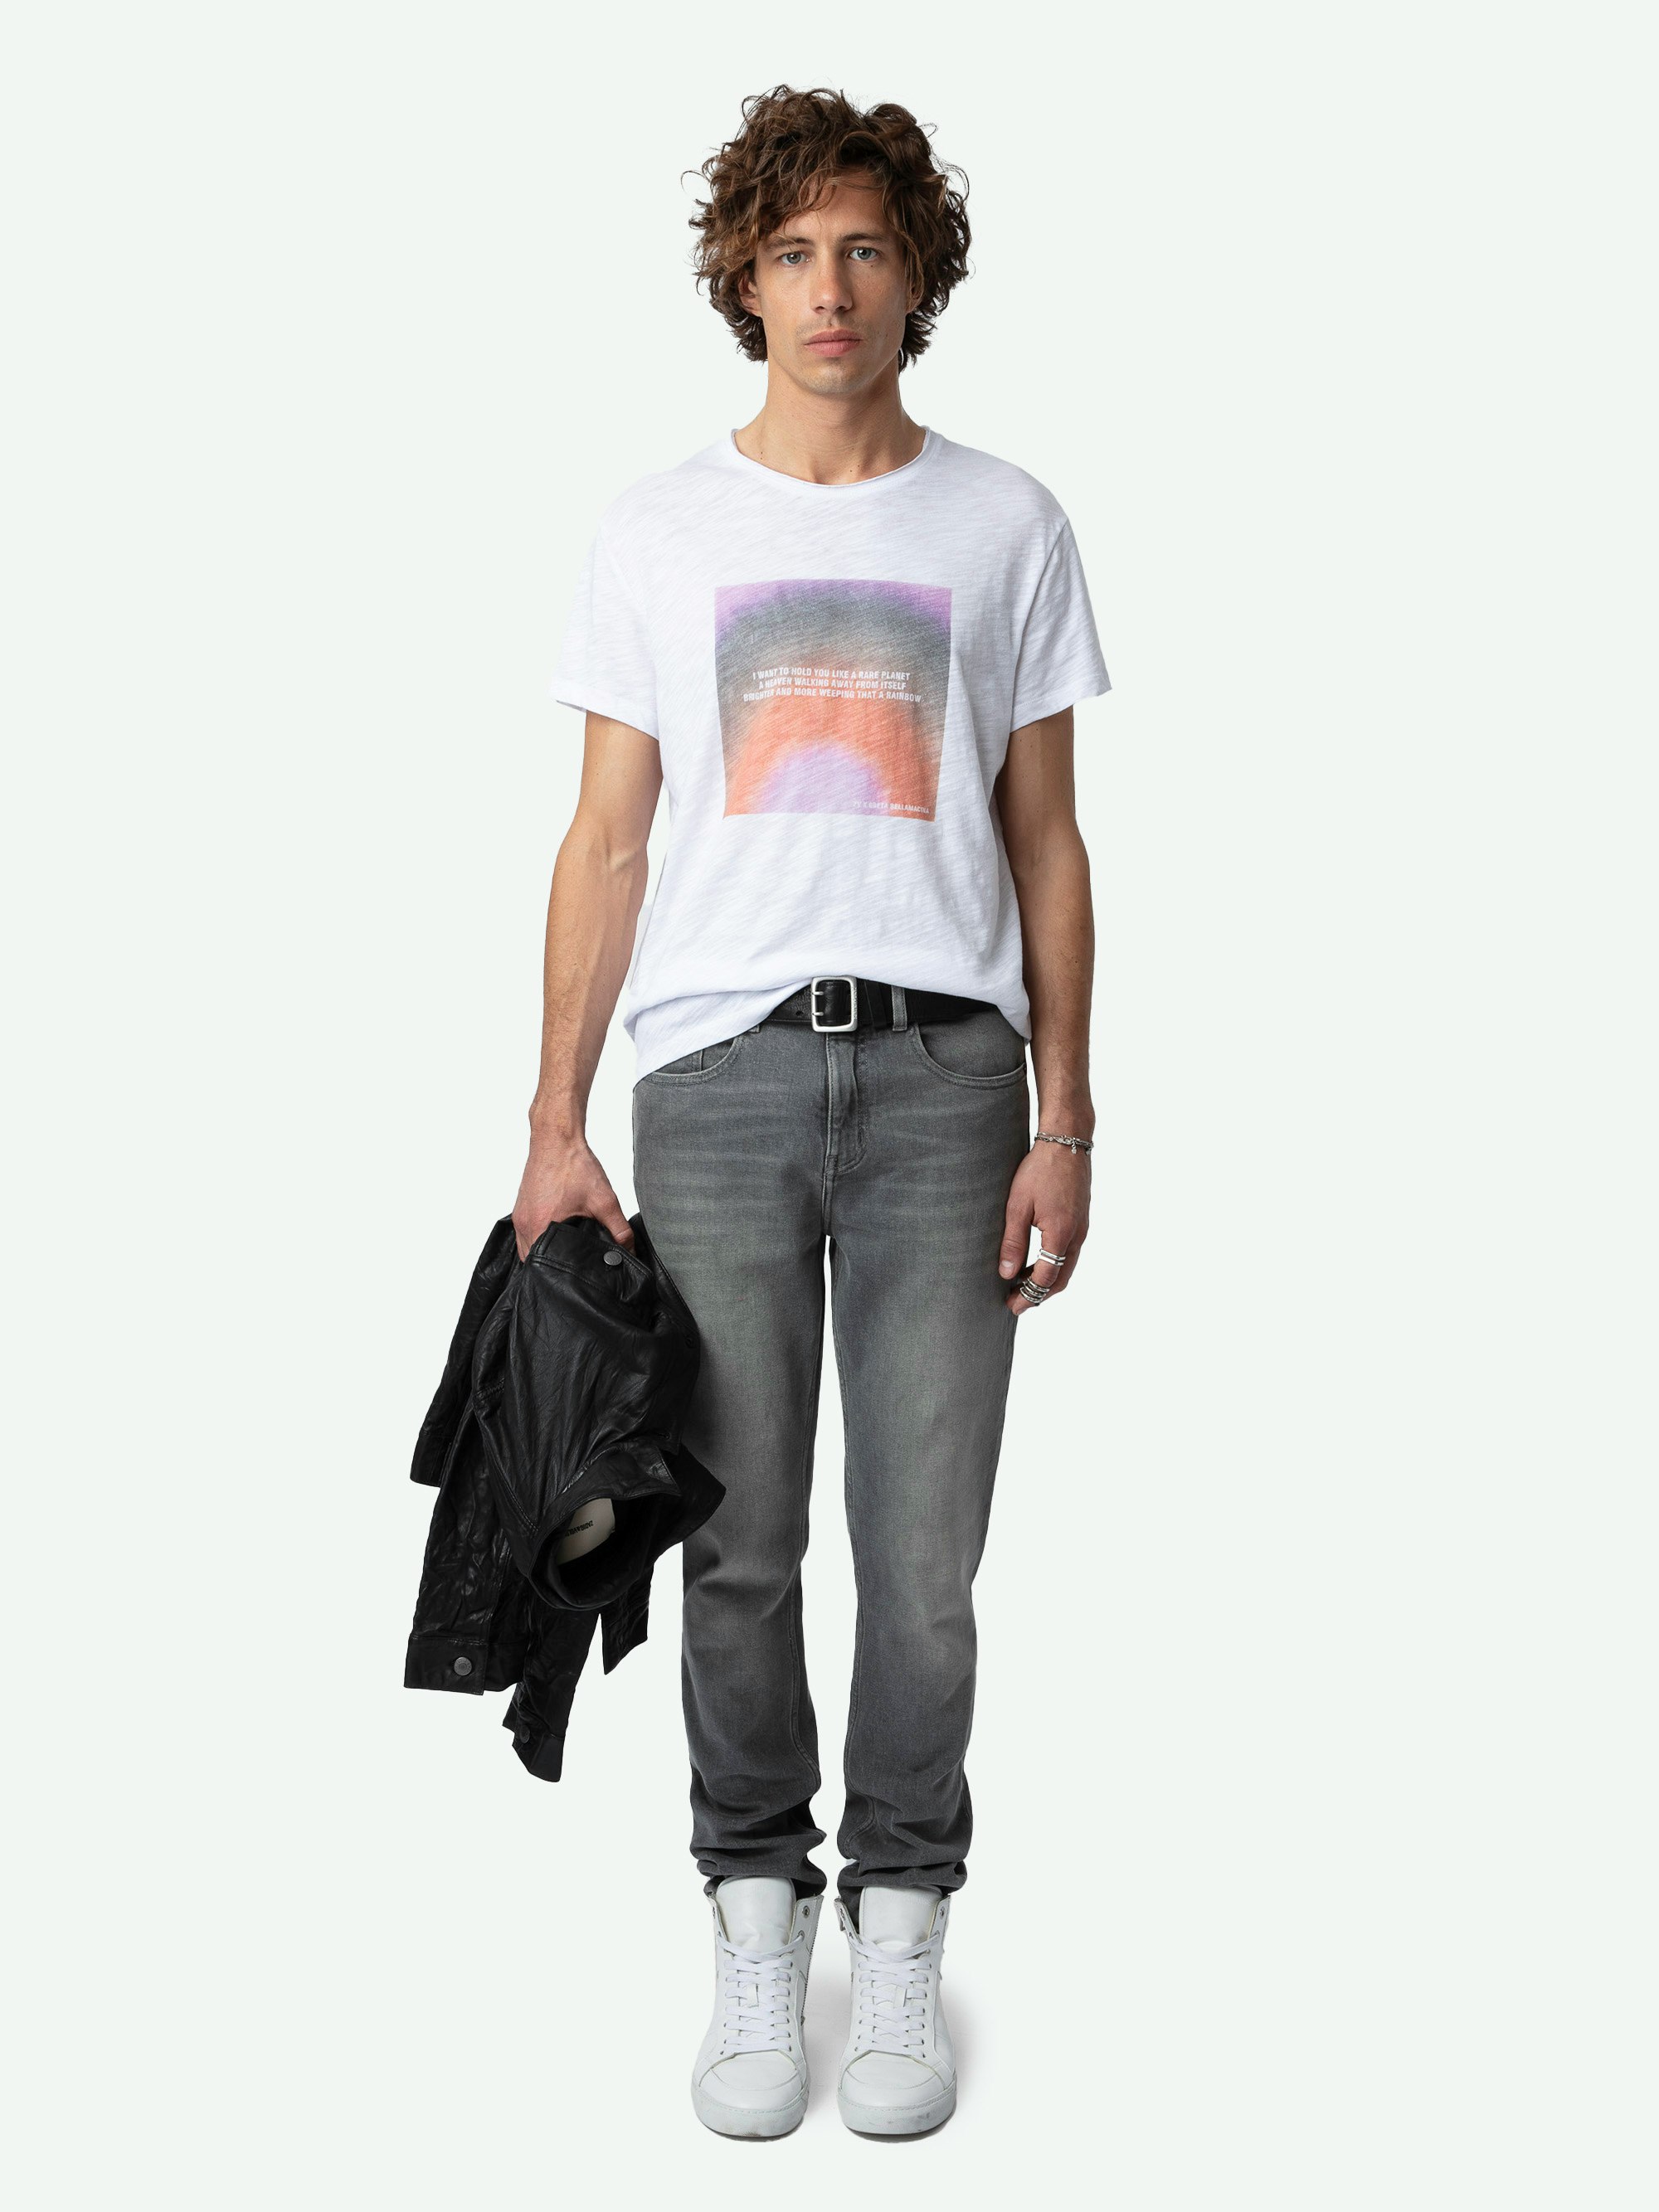 Camiseta Toby con Estampado Fotográfico - Camiseta flameada de algodón ecológico de manga corta, con estampado fotográfico y poema Greta en la parte delantera.